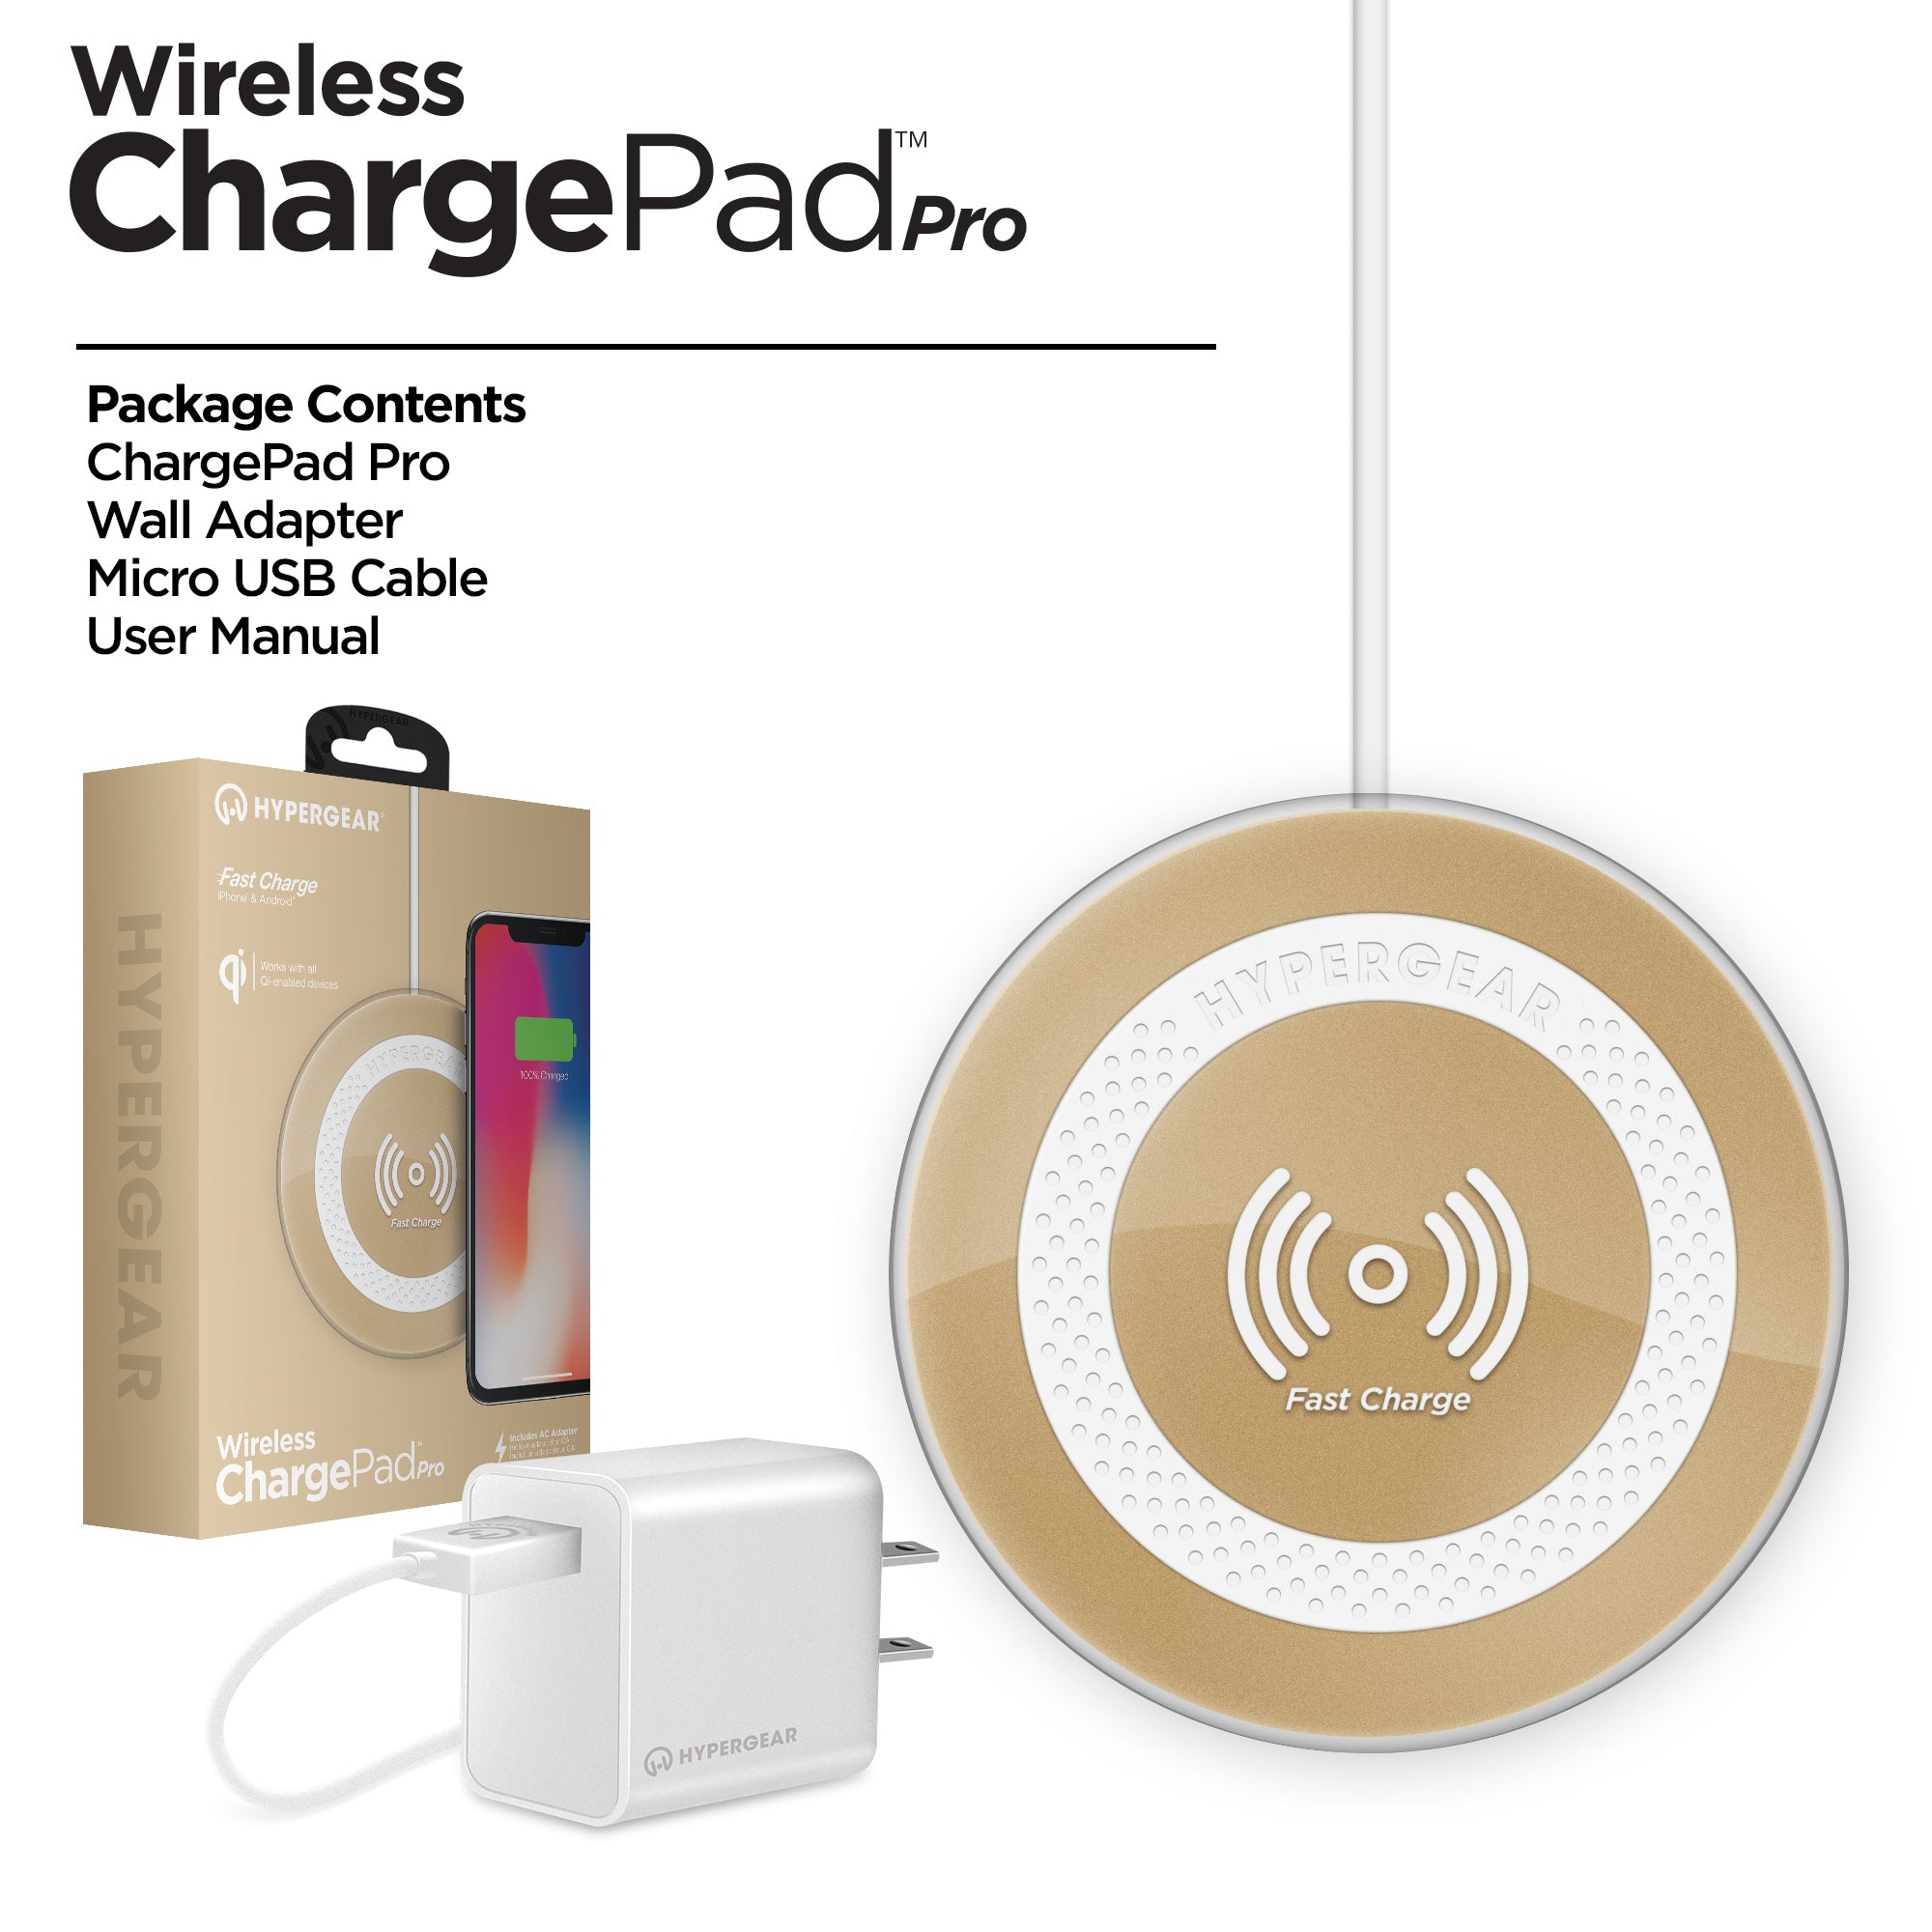 Wireless ChargePad Pro